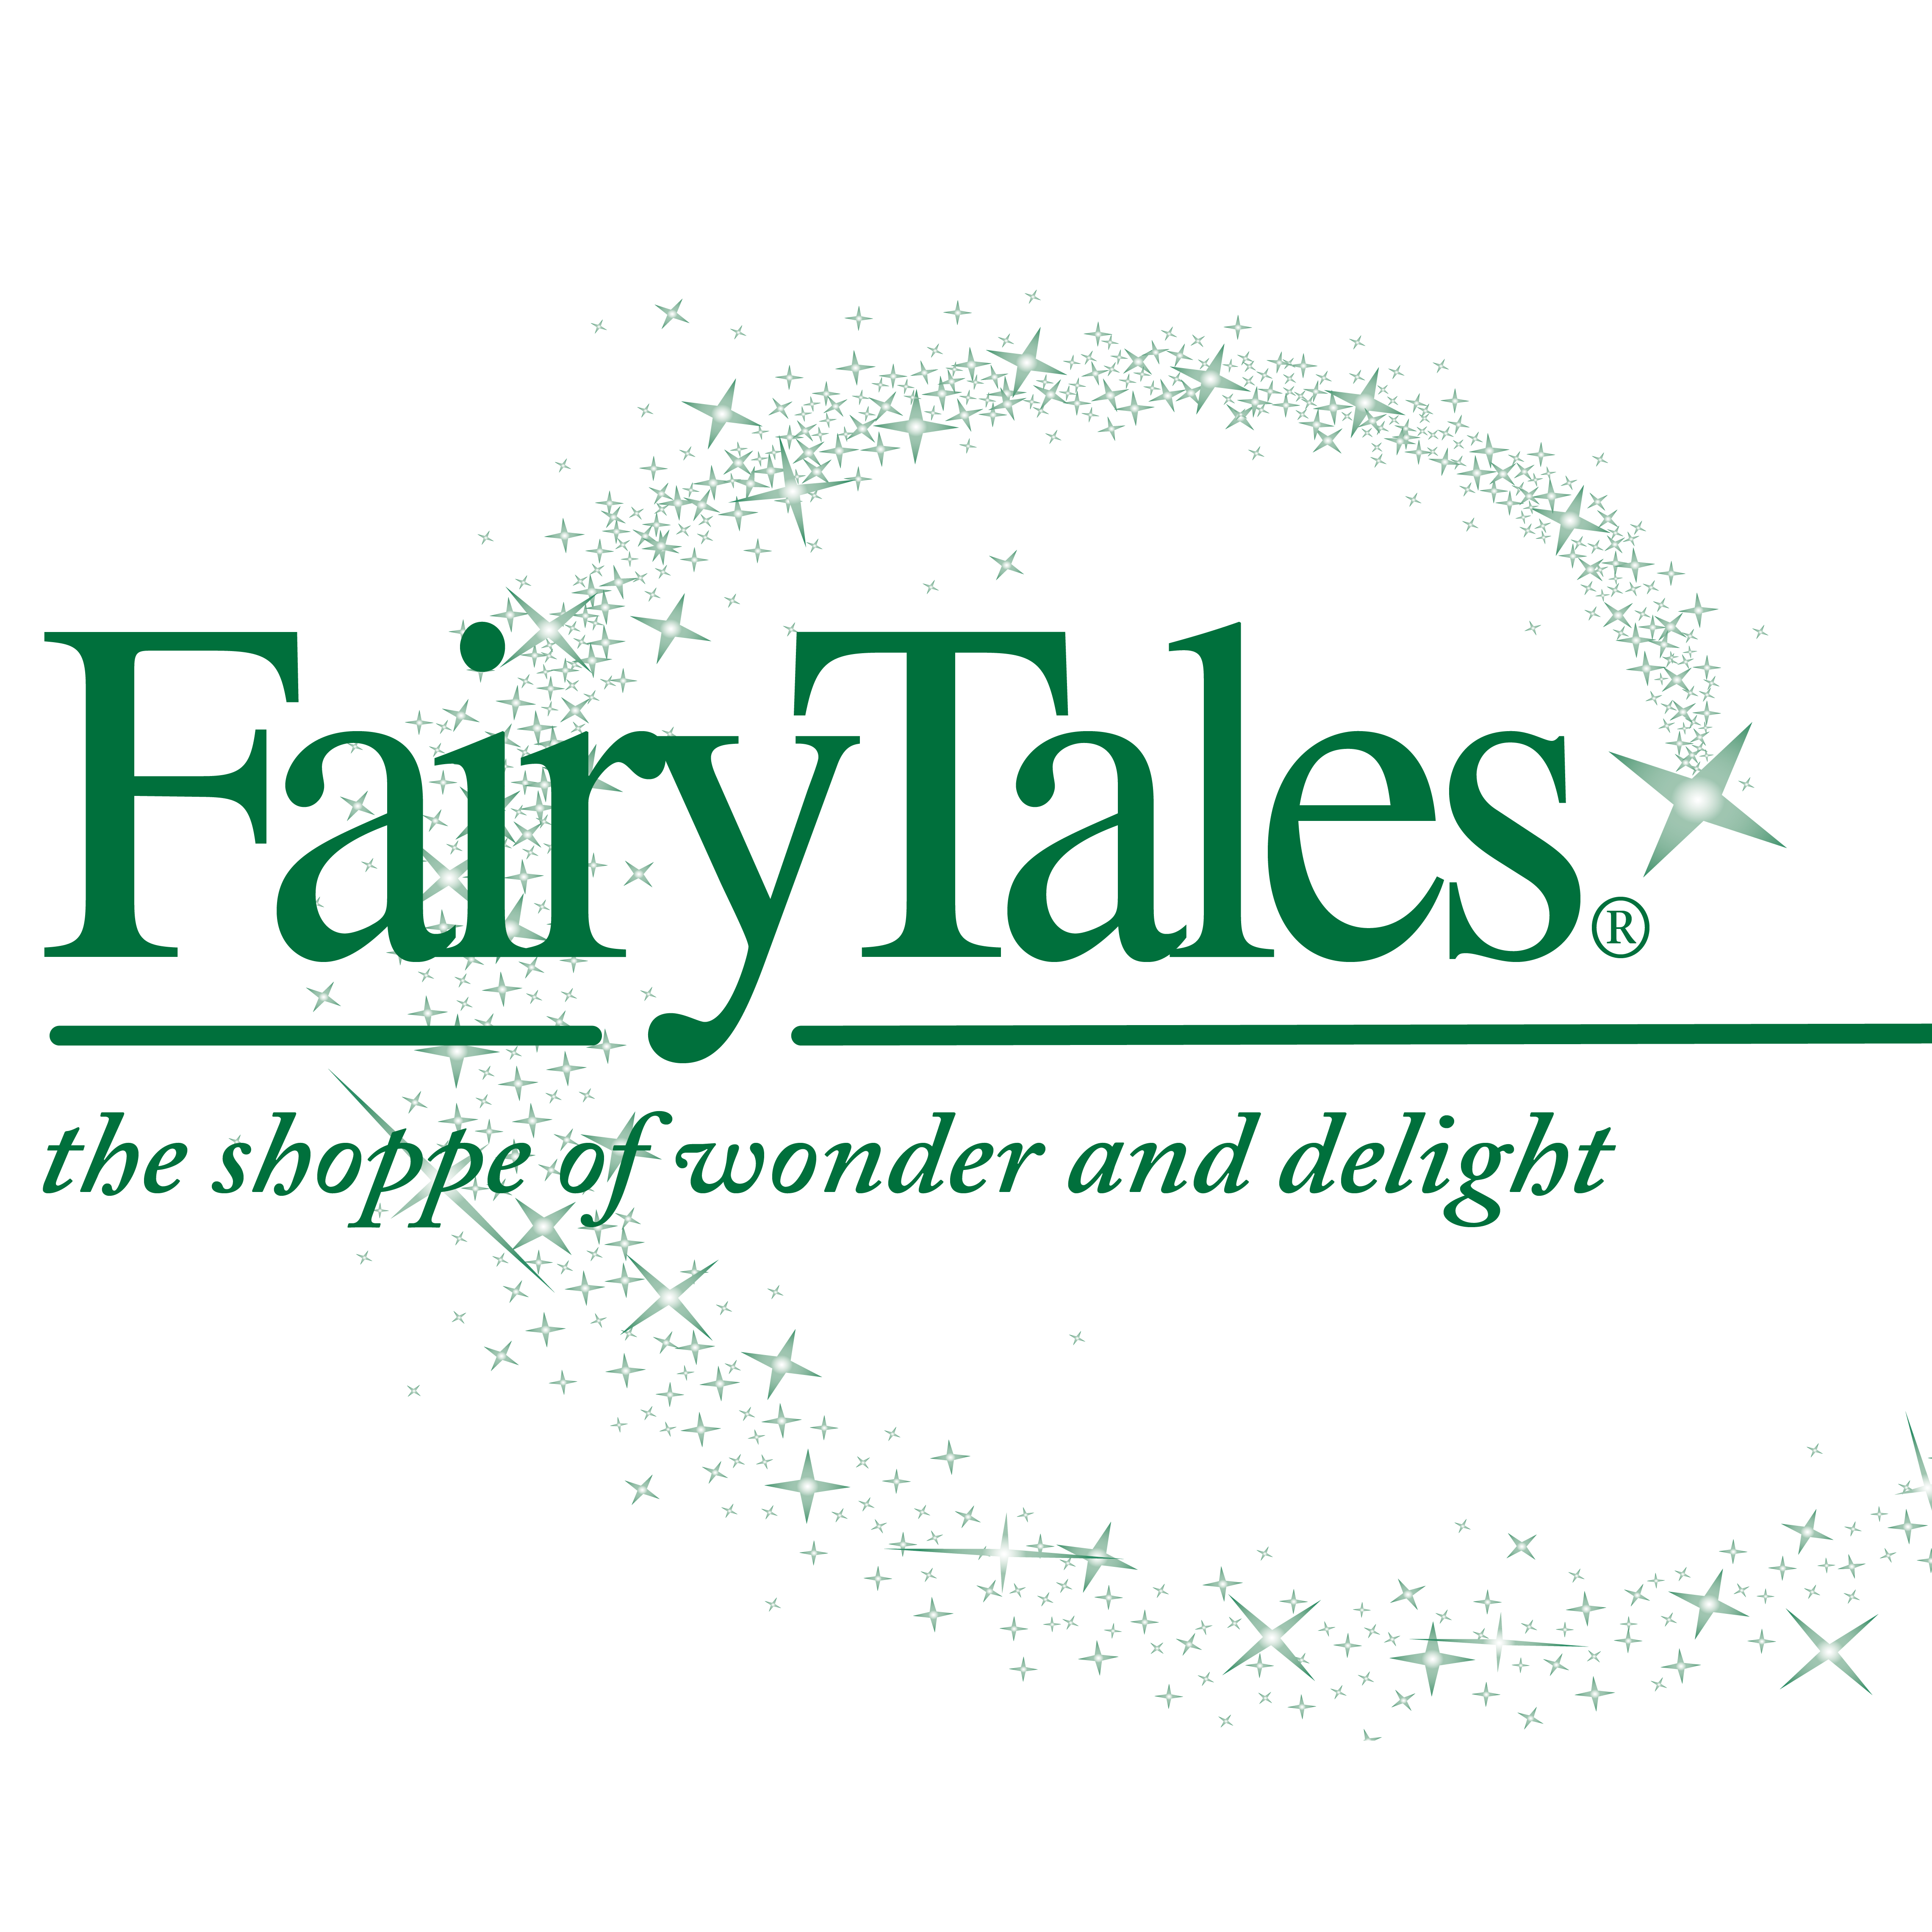 FairyTales Inc